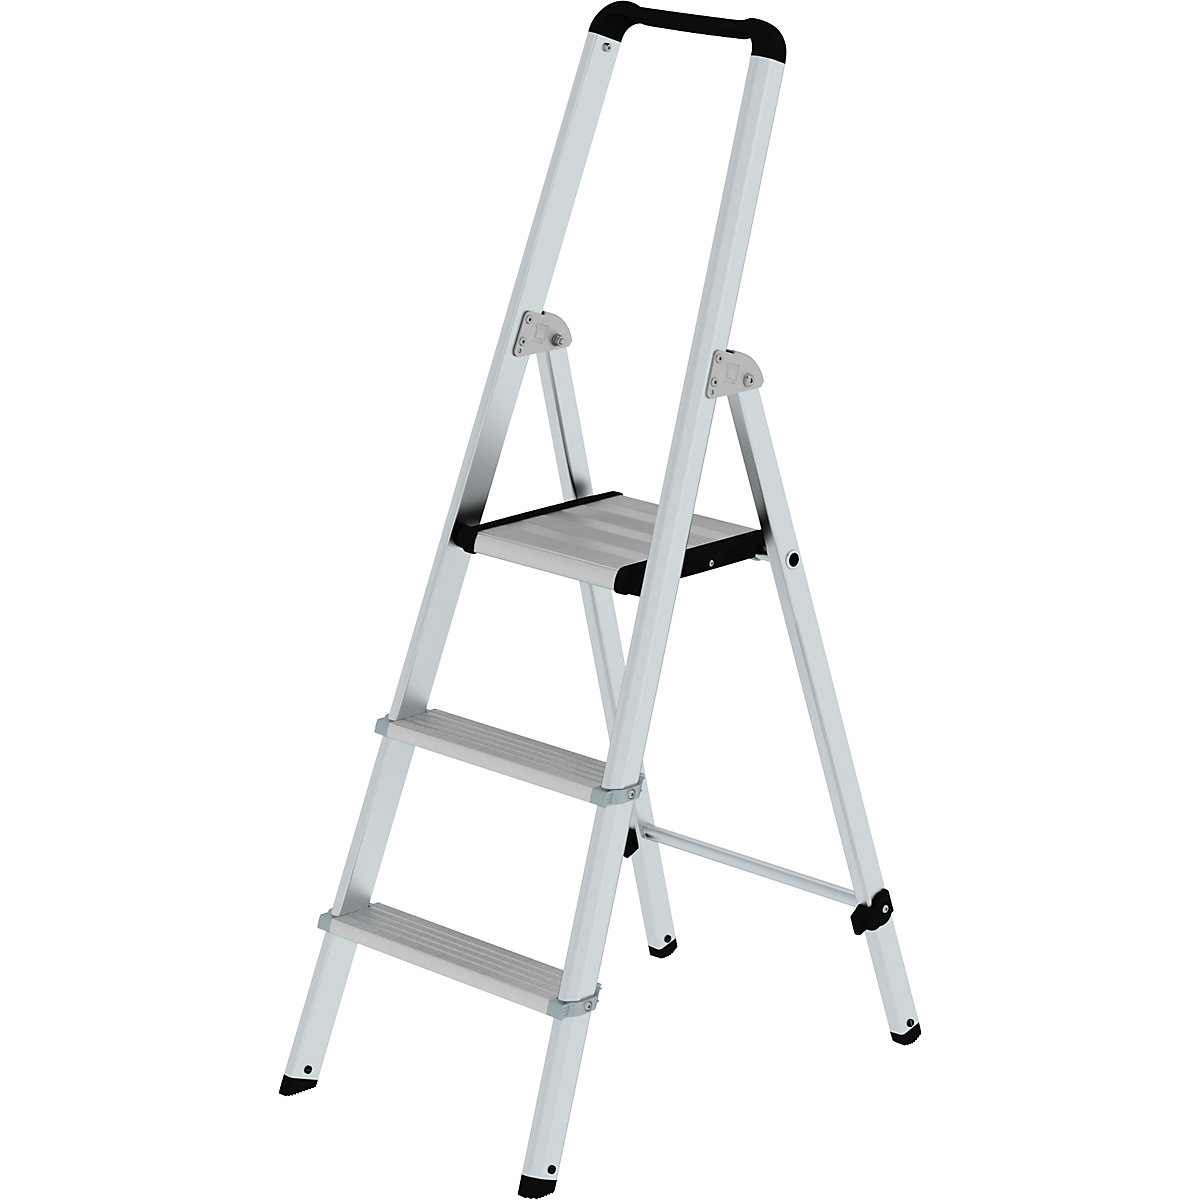 Hliníkový stojaci rebrík so stupňami, pochôdzny z jednej strany – MUNK